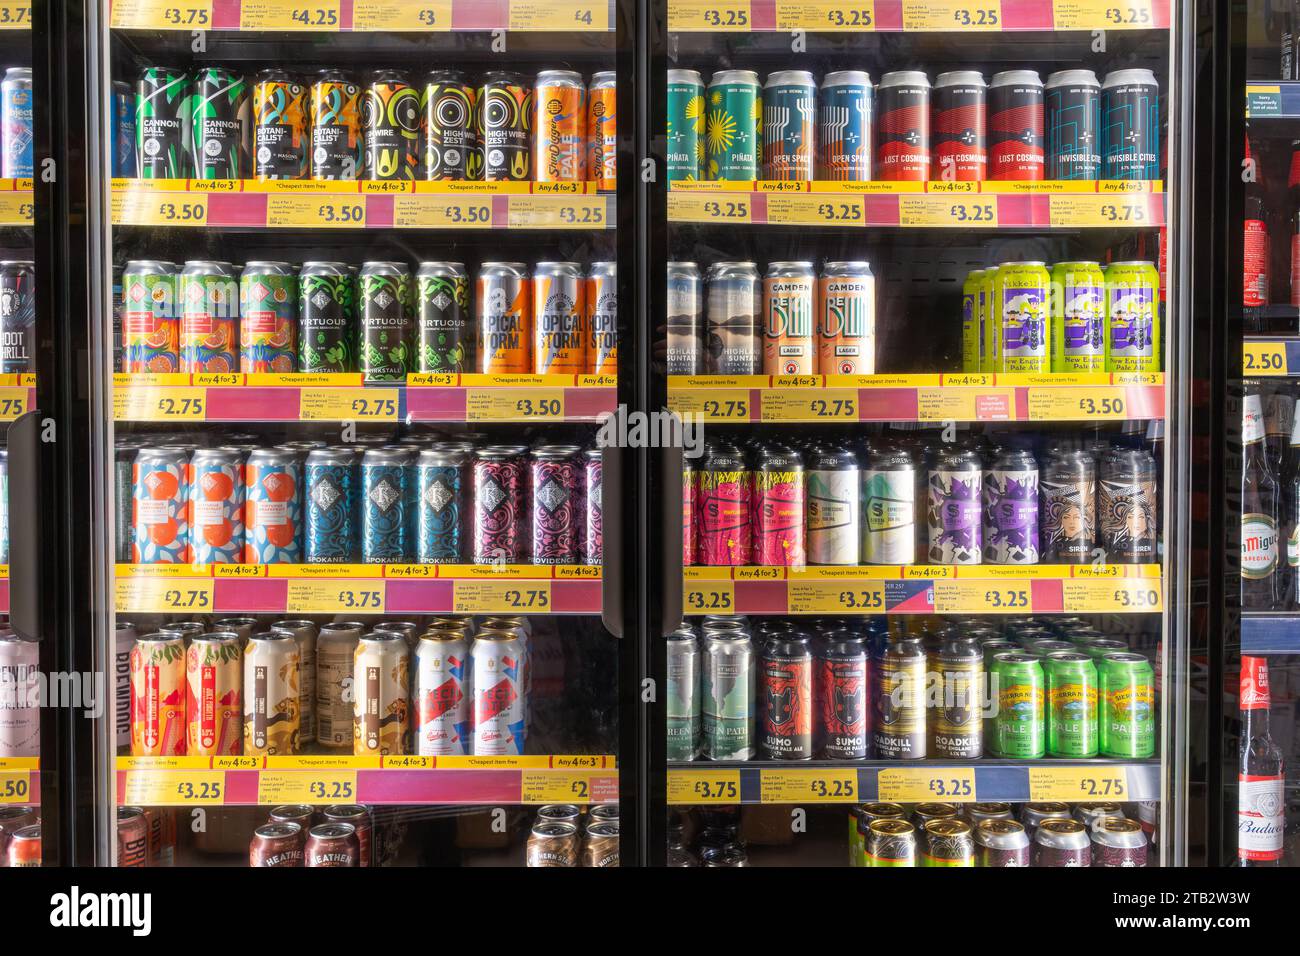 Une collection colorée et variée de bières artisanales britanniques et internationales froides en canettes en vente dans les réfrigérateurs au supermarché Morrisons, en Angleterre Banque D'Images